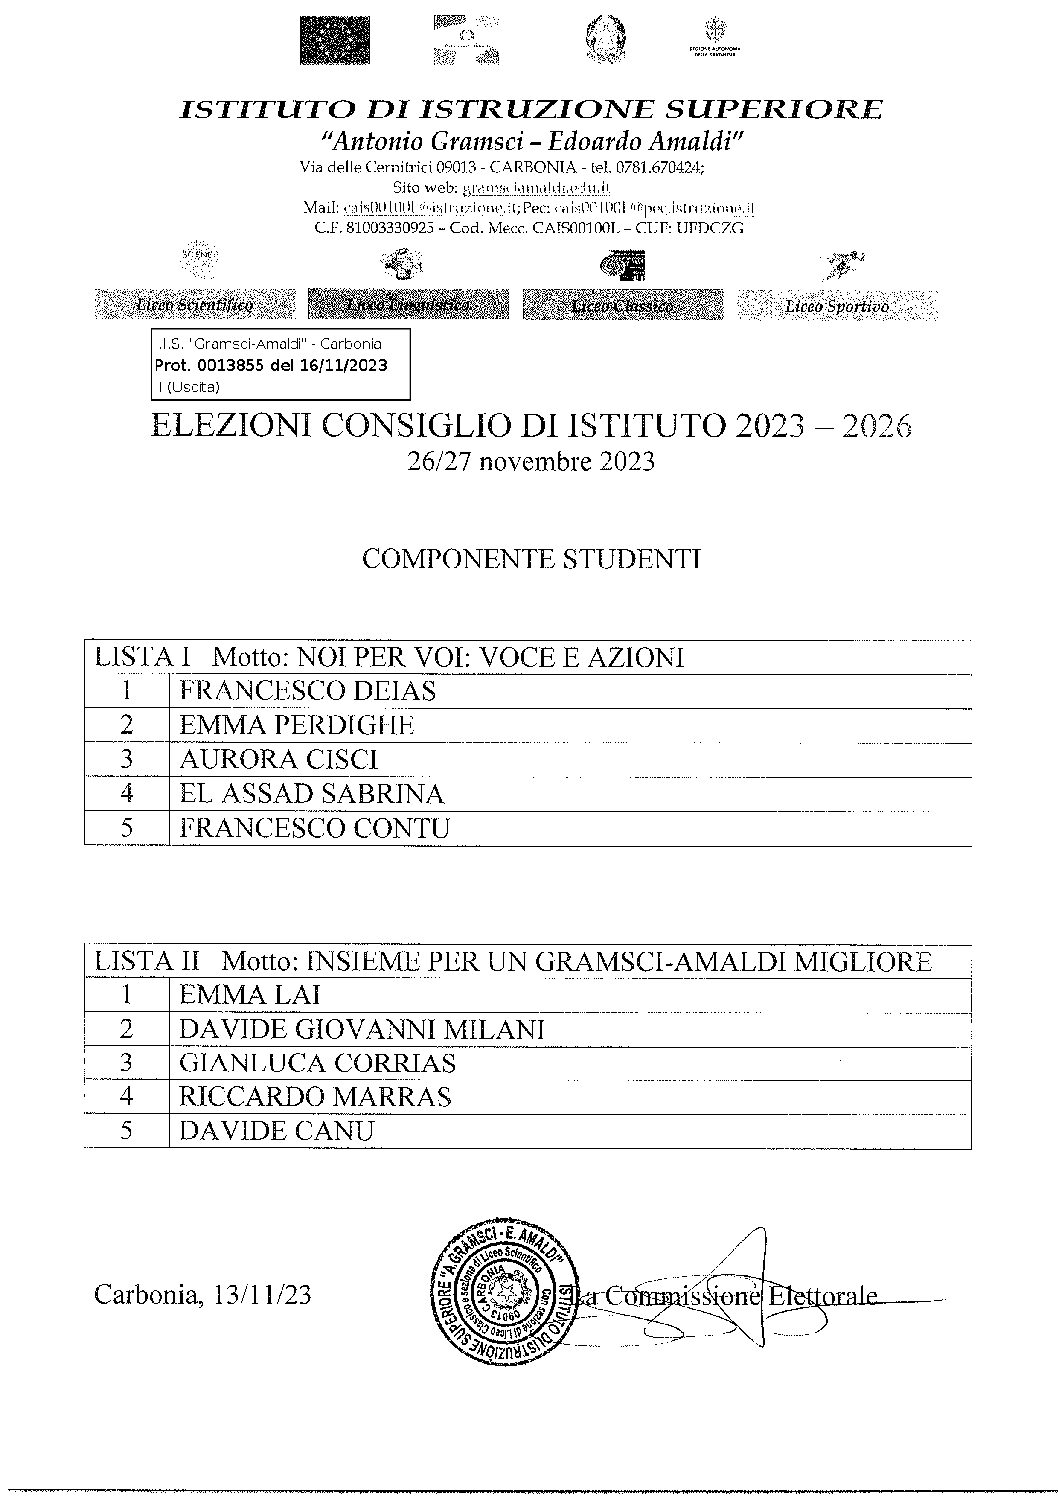 ELEZIONI CONSIGLIO DI ISTITUTO - LISTE COMP. STUDENTI